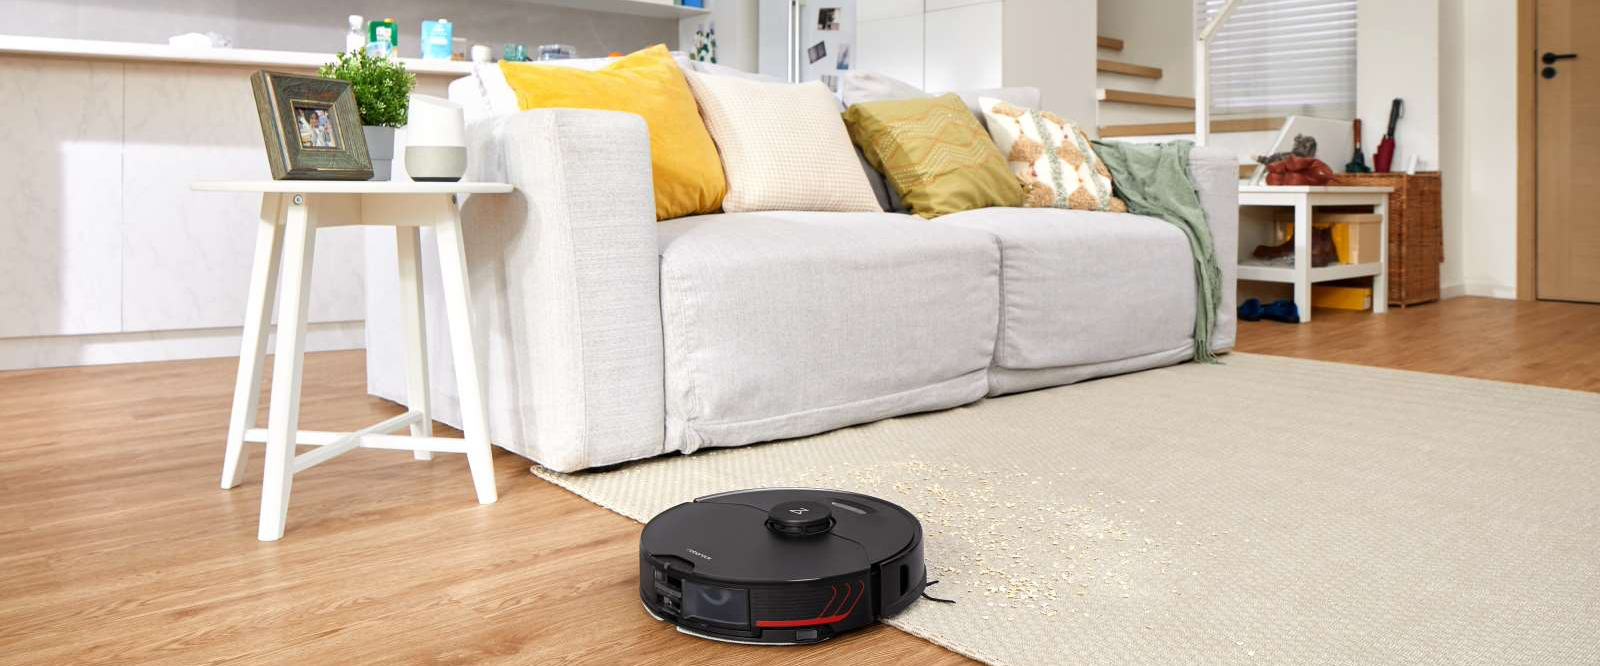 Roborock Vacuum Cleaner S7 MaxV синхронізація з голосовими помічниками 